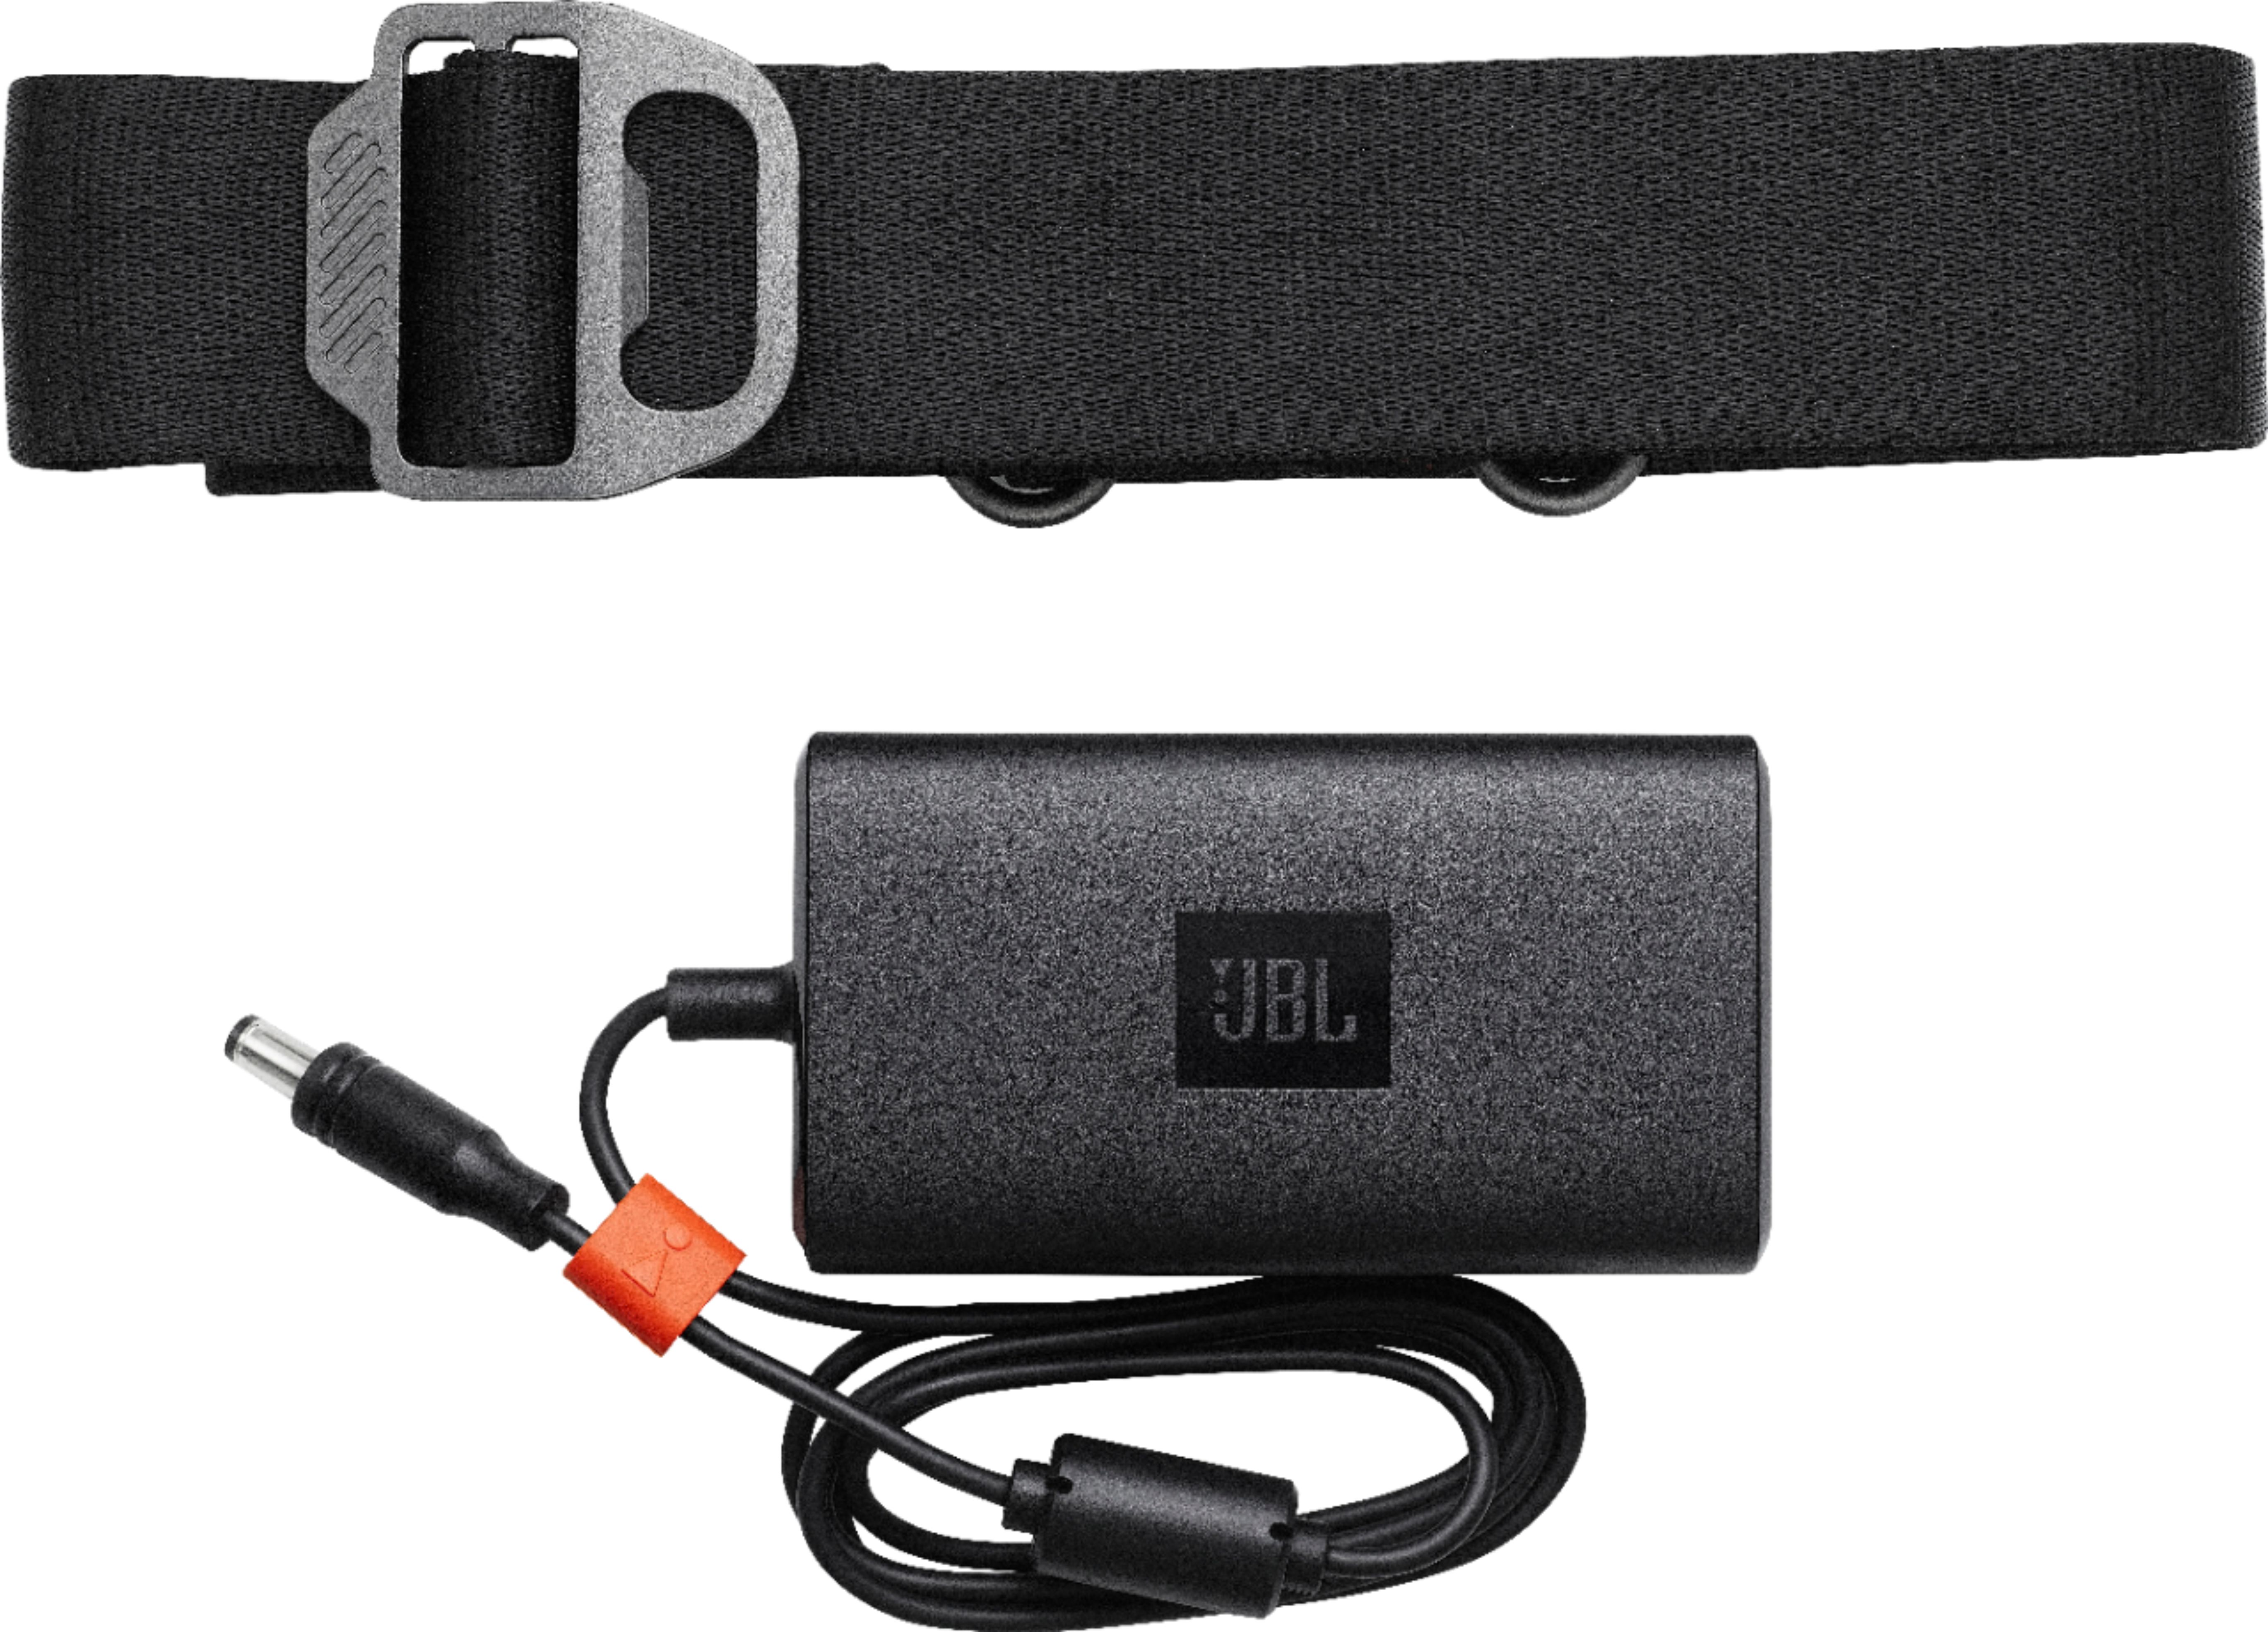 Besøg bedsteforældre Onset Alternativt forslag JBL Xtreme 2 Portable Bluetooth Speaker Black JBLXTREME2BLKAM - Best Buy